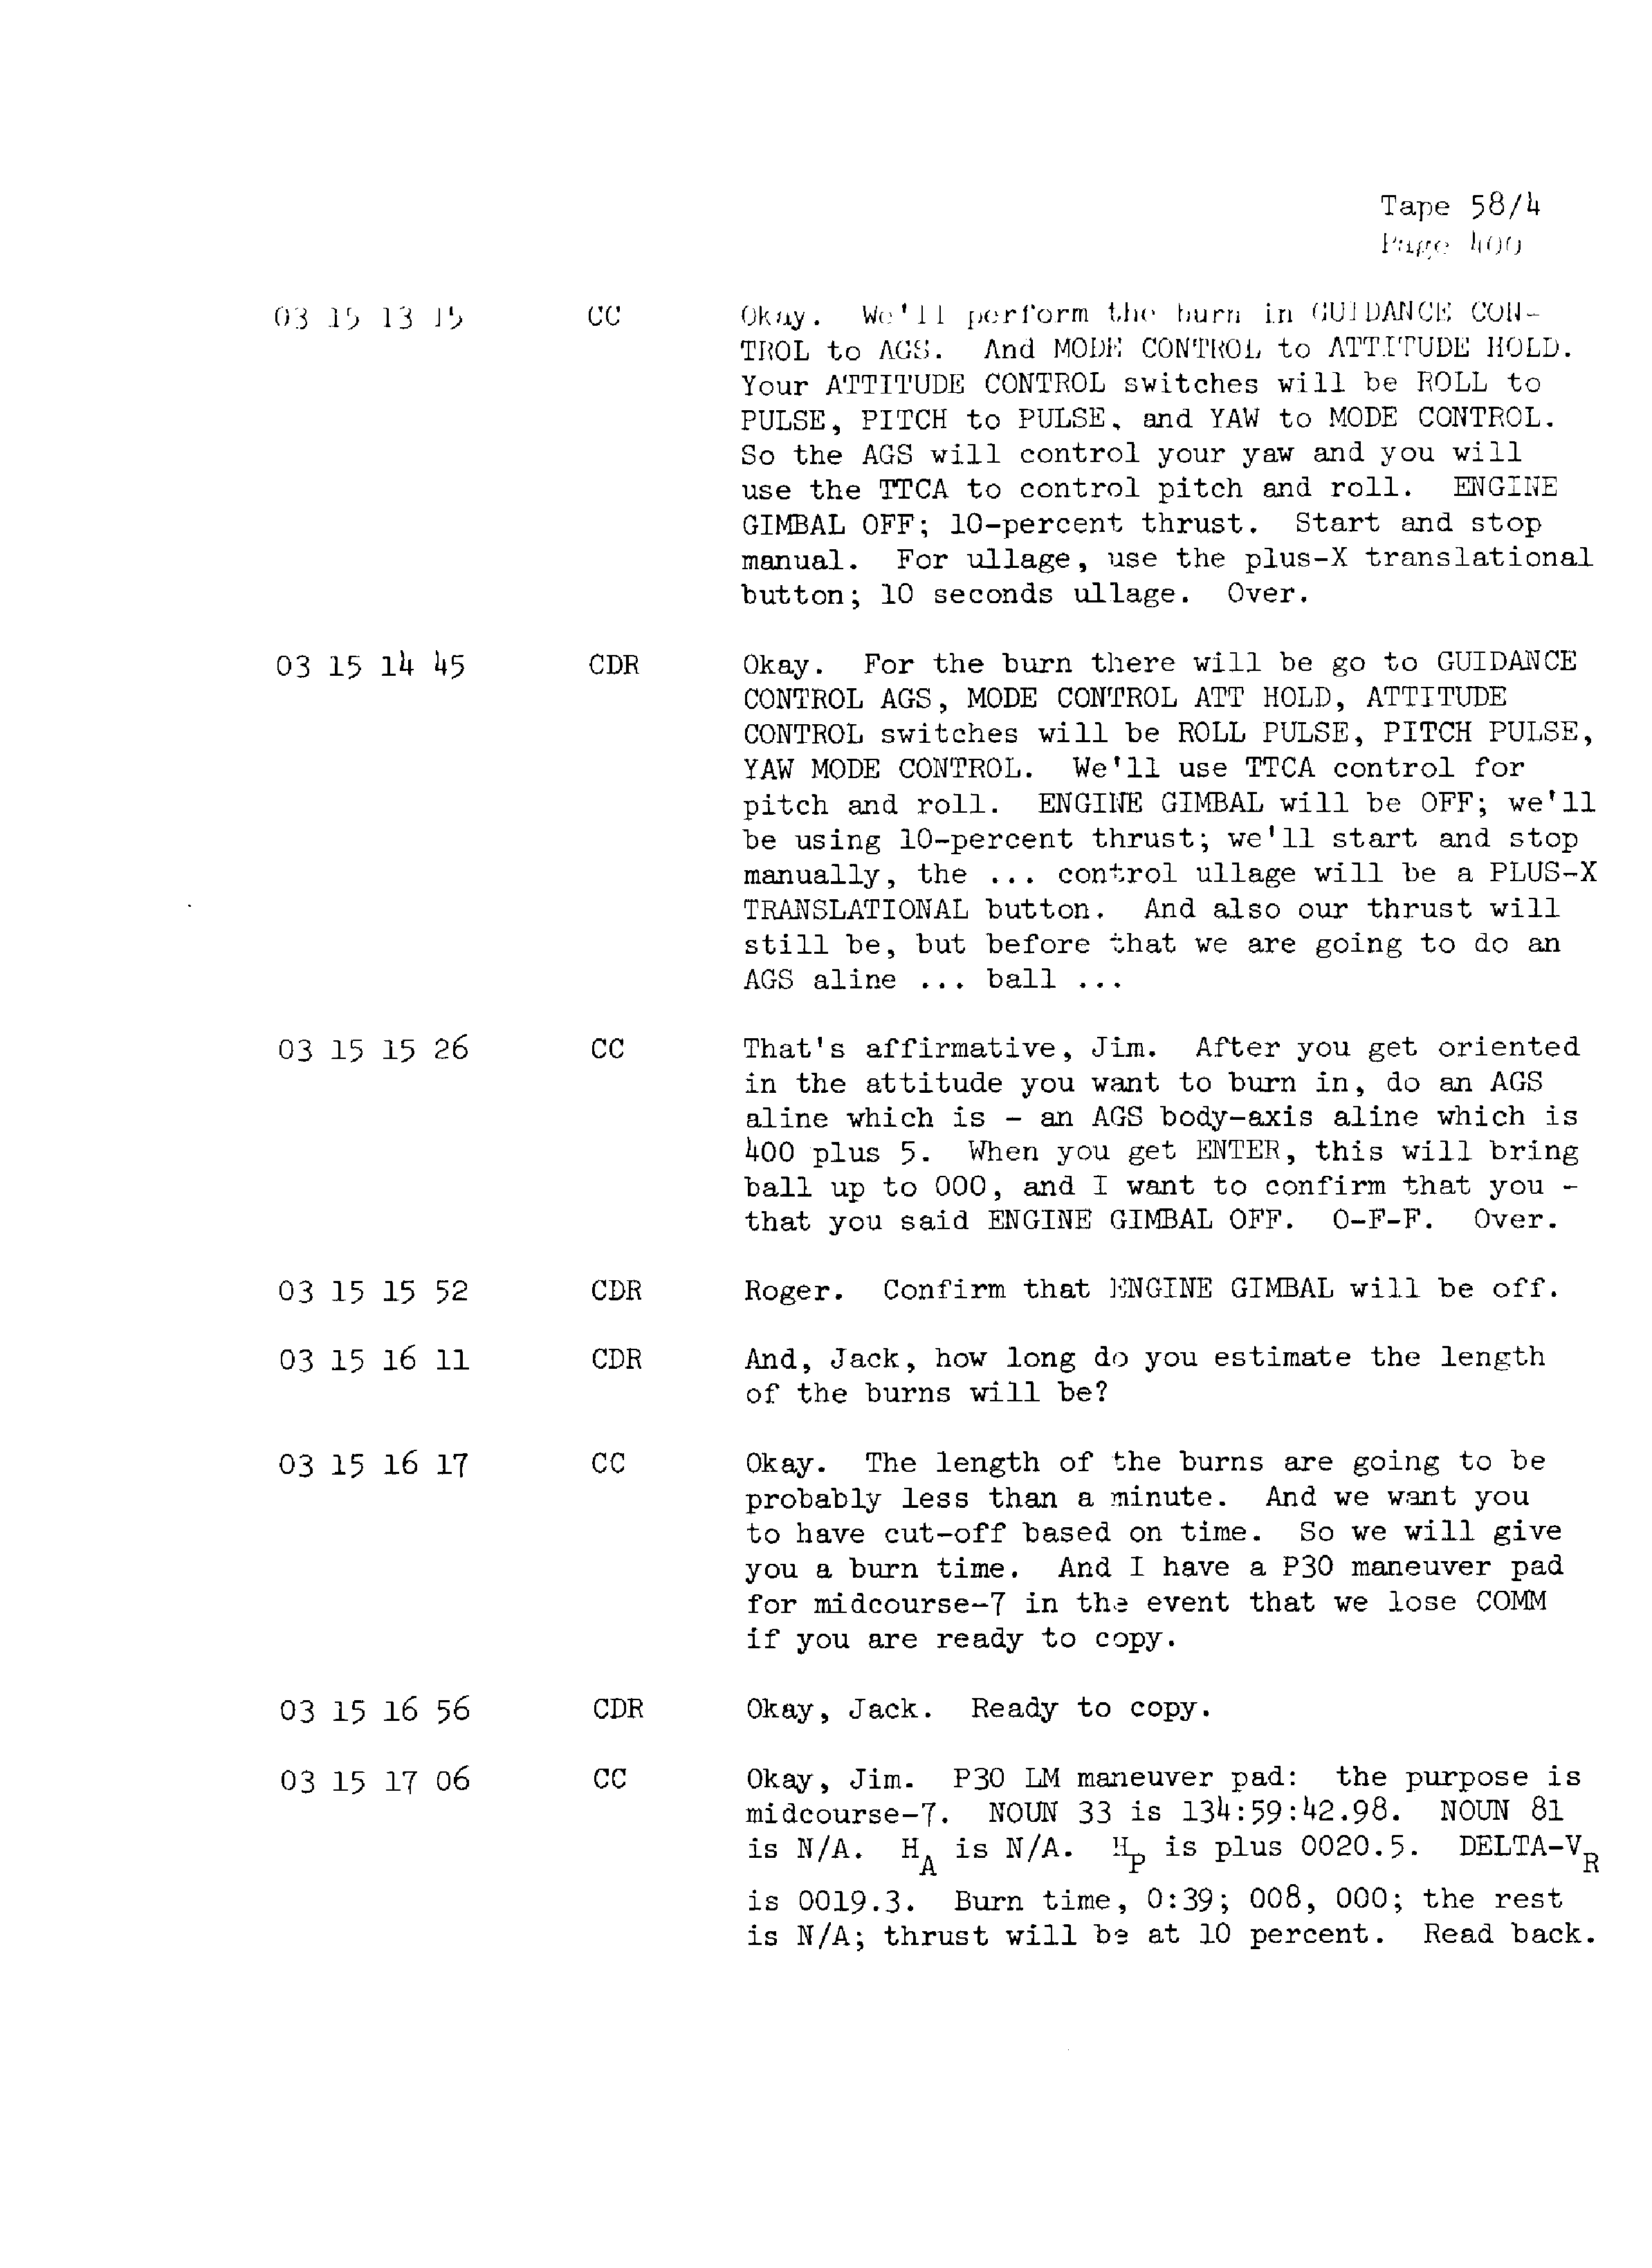 Page 407 of Apollo 13’s original transcript